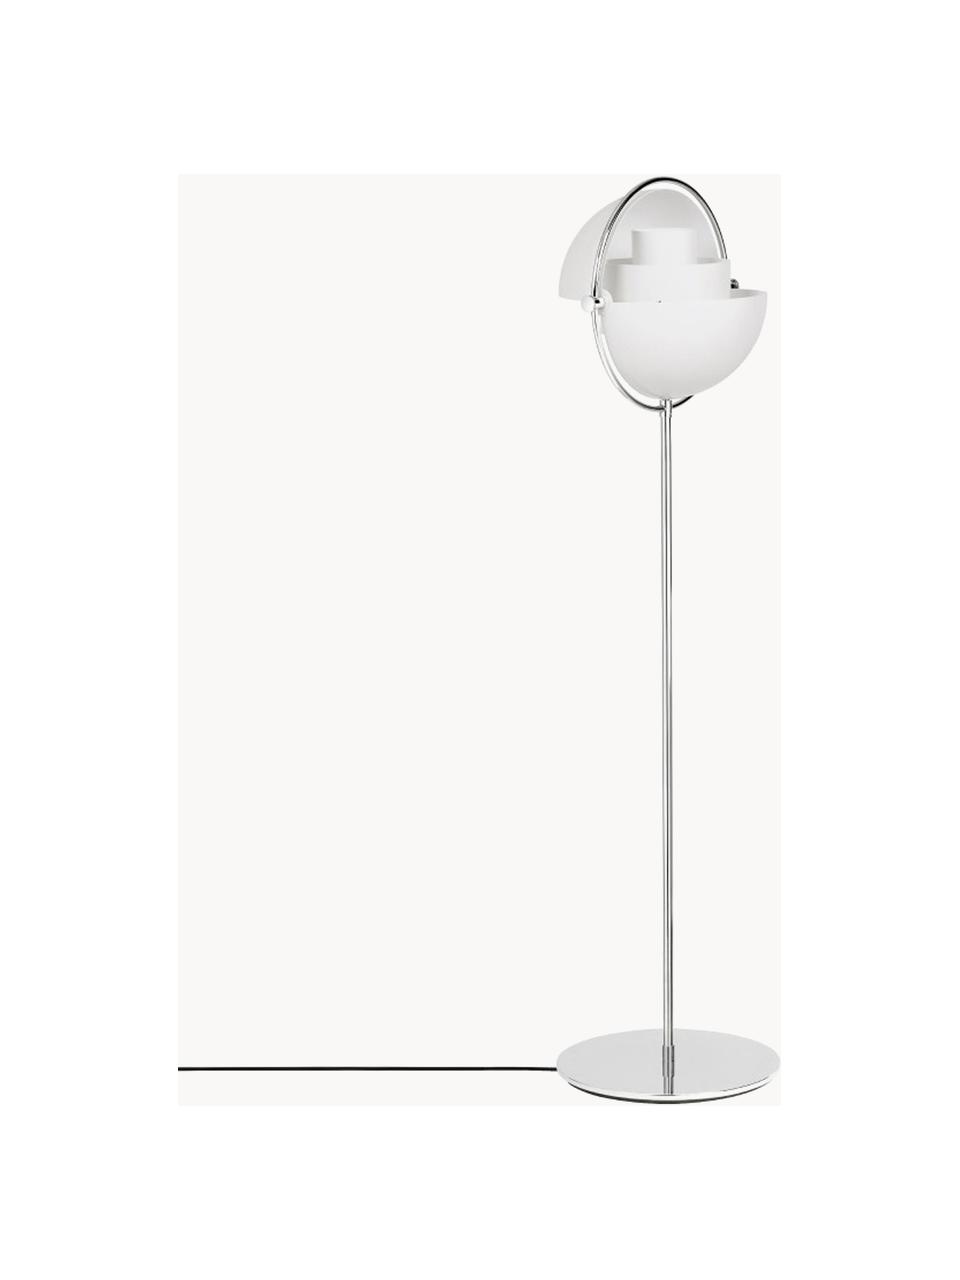 Verstellbare Stehlampe Multi-Lite, Weiss matt, Silberfarben glänzend, H 148 cm